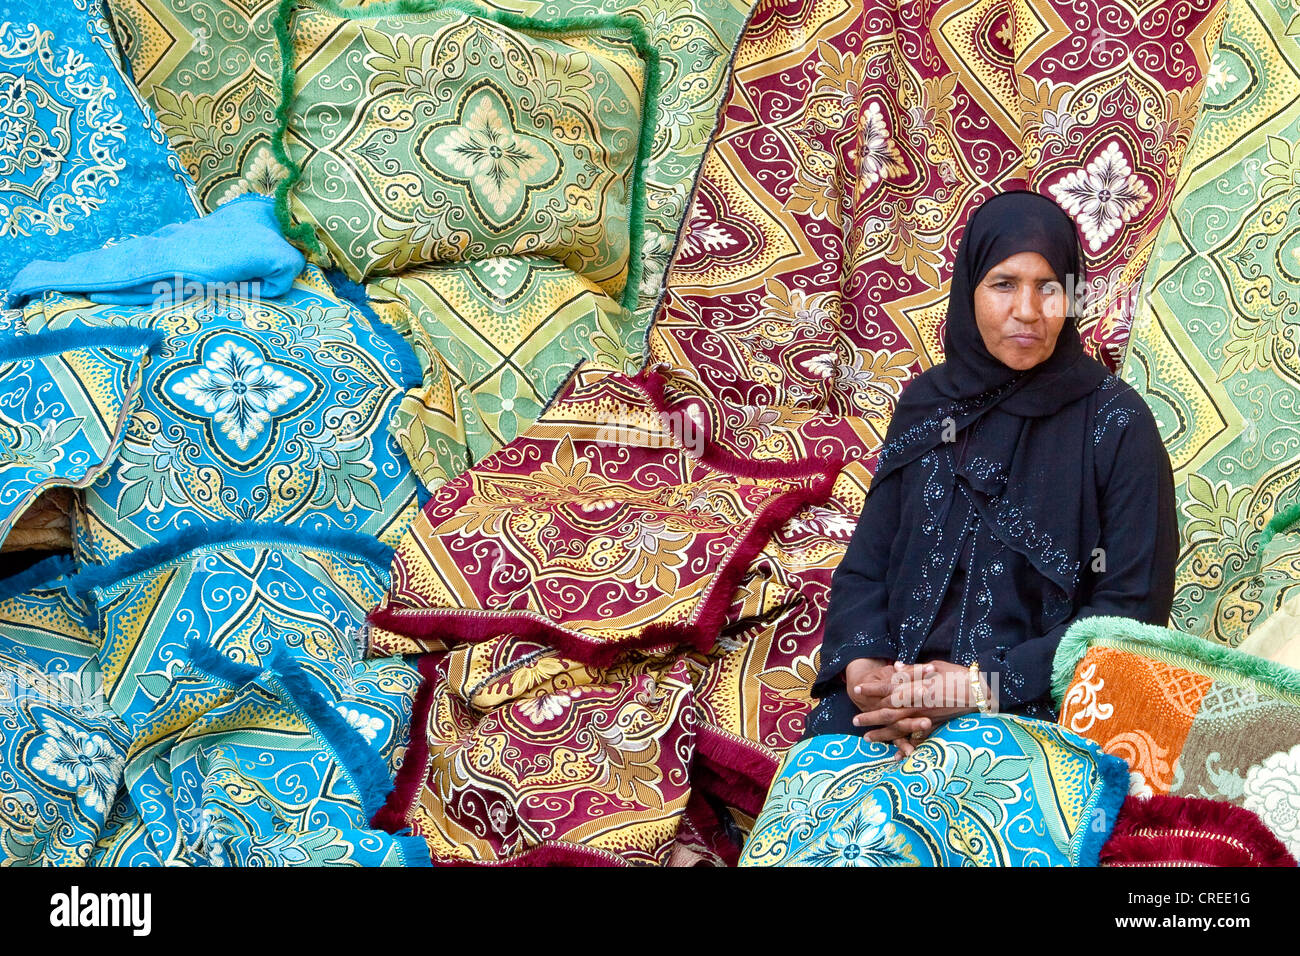 Bekleidung und Textilien Markt im Souk, in der Medina, historisches Viertel in Marrakesch, Marokko, Afrika Stockfoto